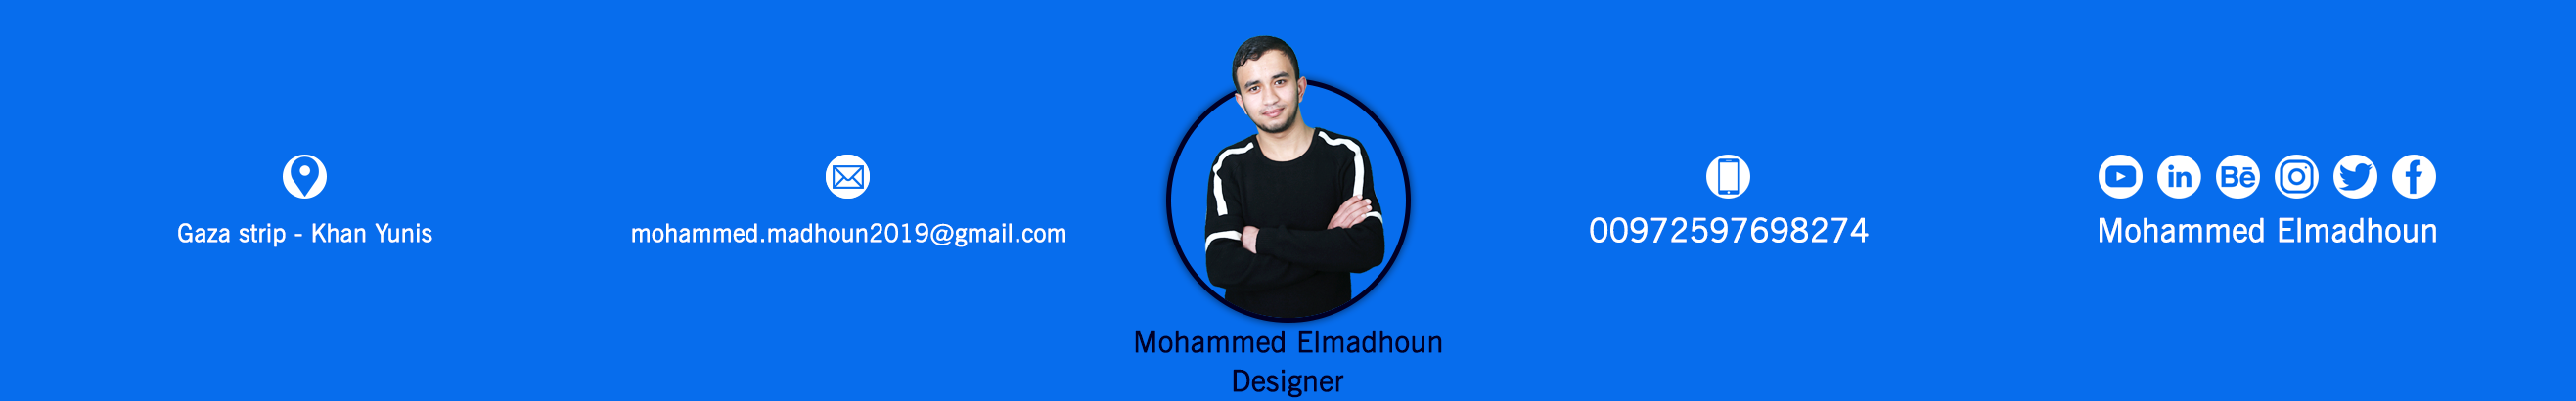 Profilbanneret til Mohammed Elmadhoun